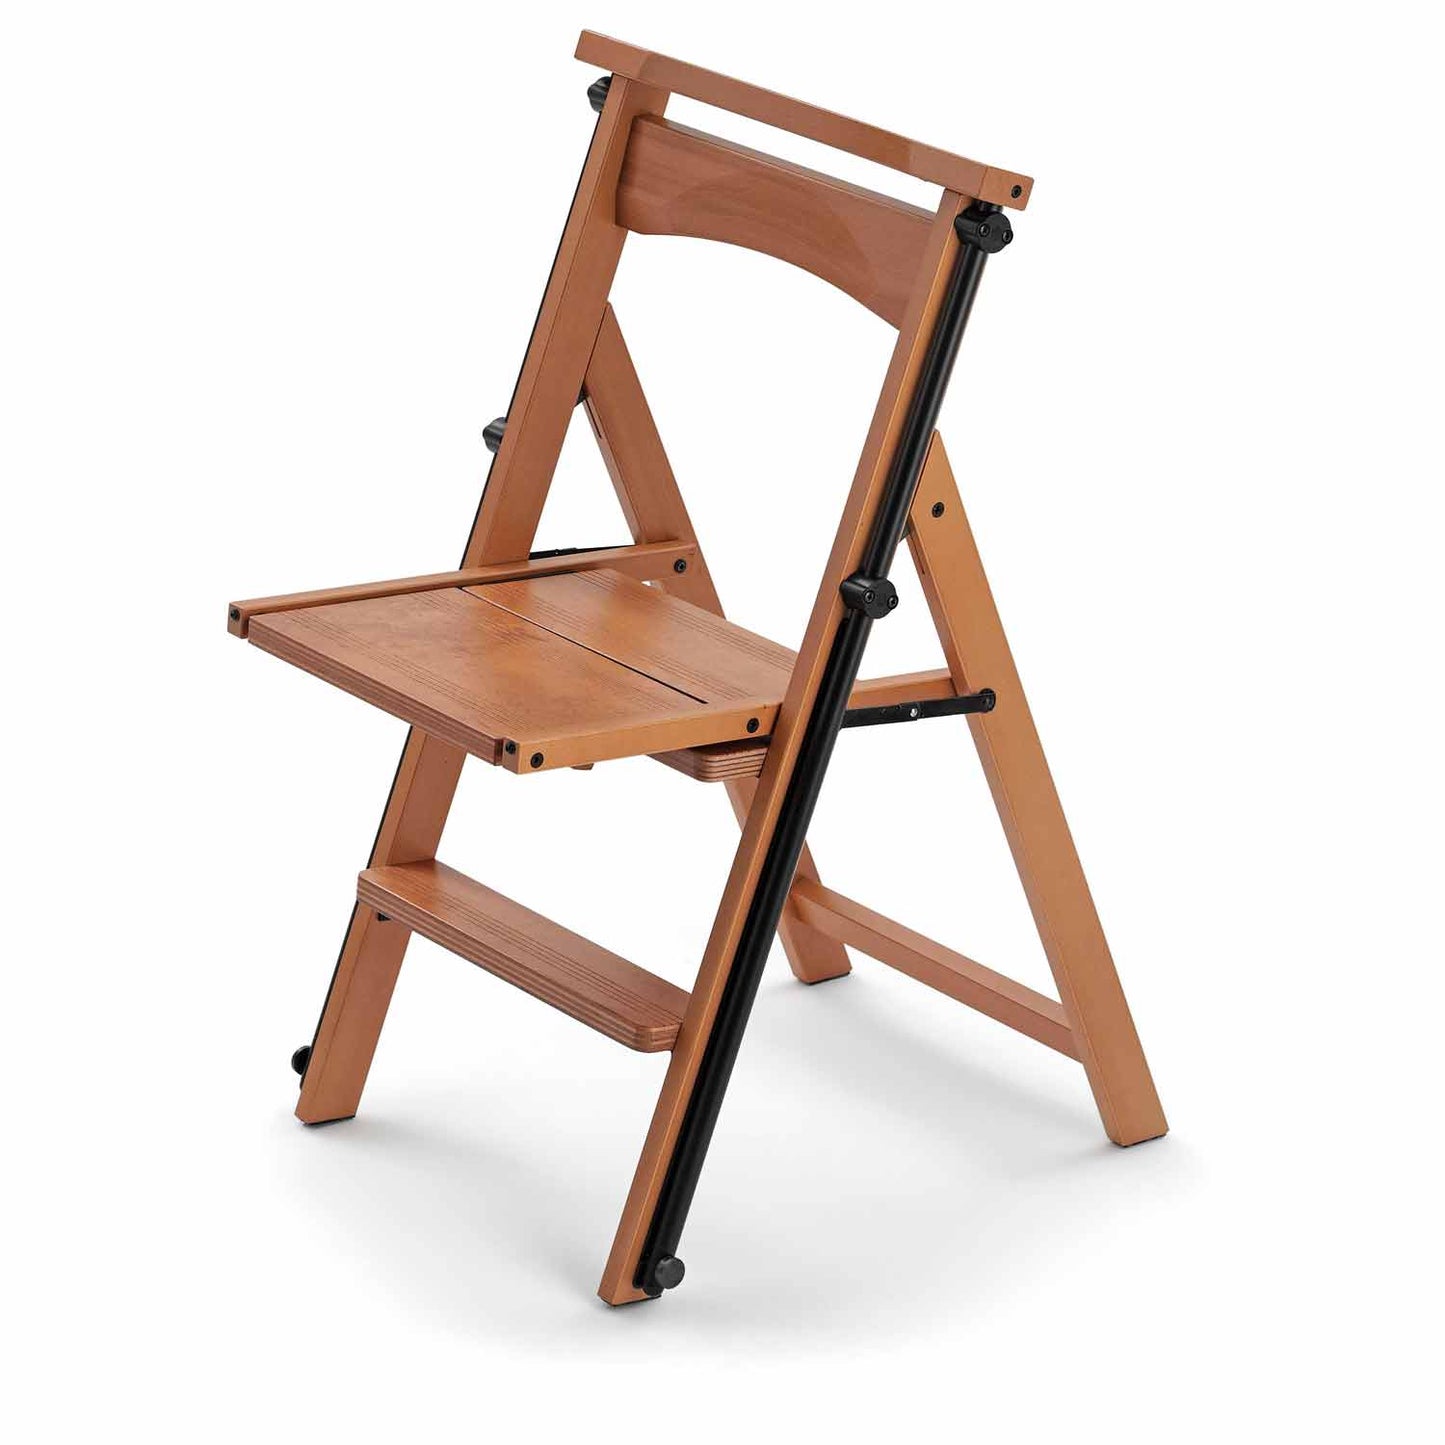 Leiter, Trittleiter, Trittleiter 4 stufen, Trittleiter Holz, umwandelbarer Stuhl, mit Sicherheitssystem, ELETTA, 5